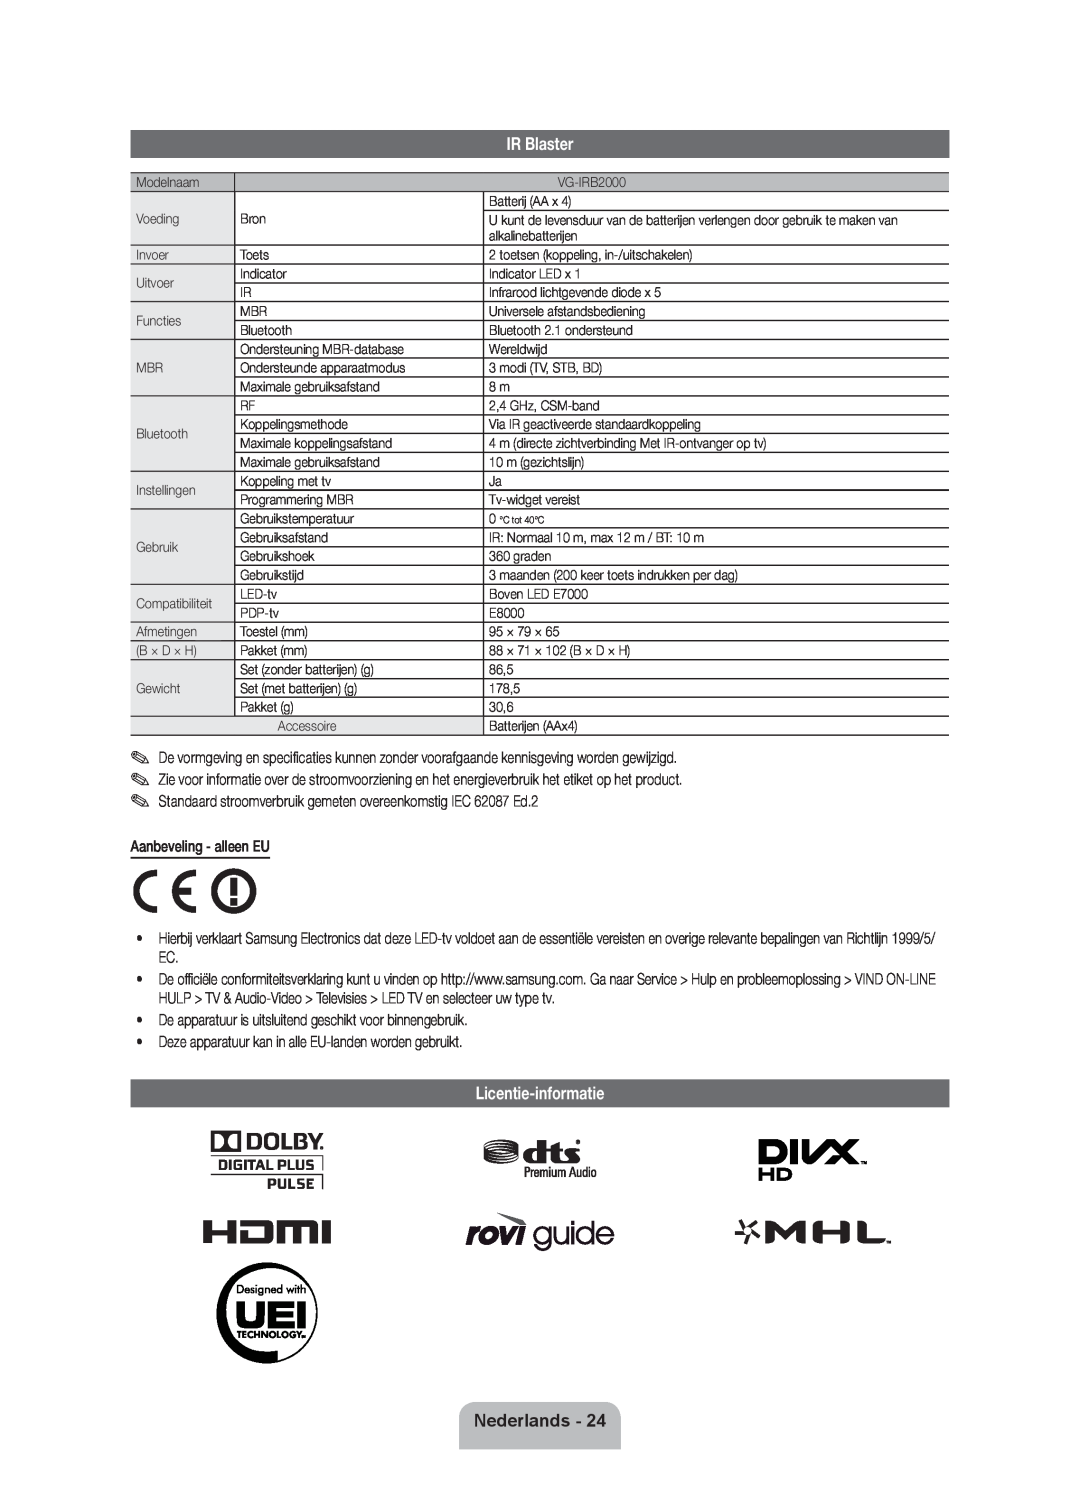 Samsung UE55ES7000SXXN, UE46D7090LSXZG Licentie-informatie, IR Blaster, Nederlands, Aanbeveling - alleen EU, C tot 40C 